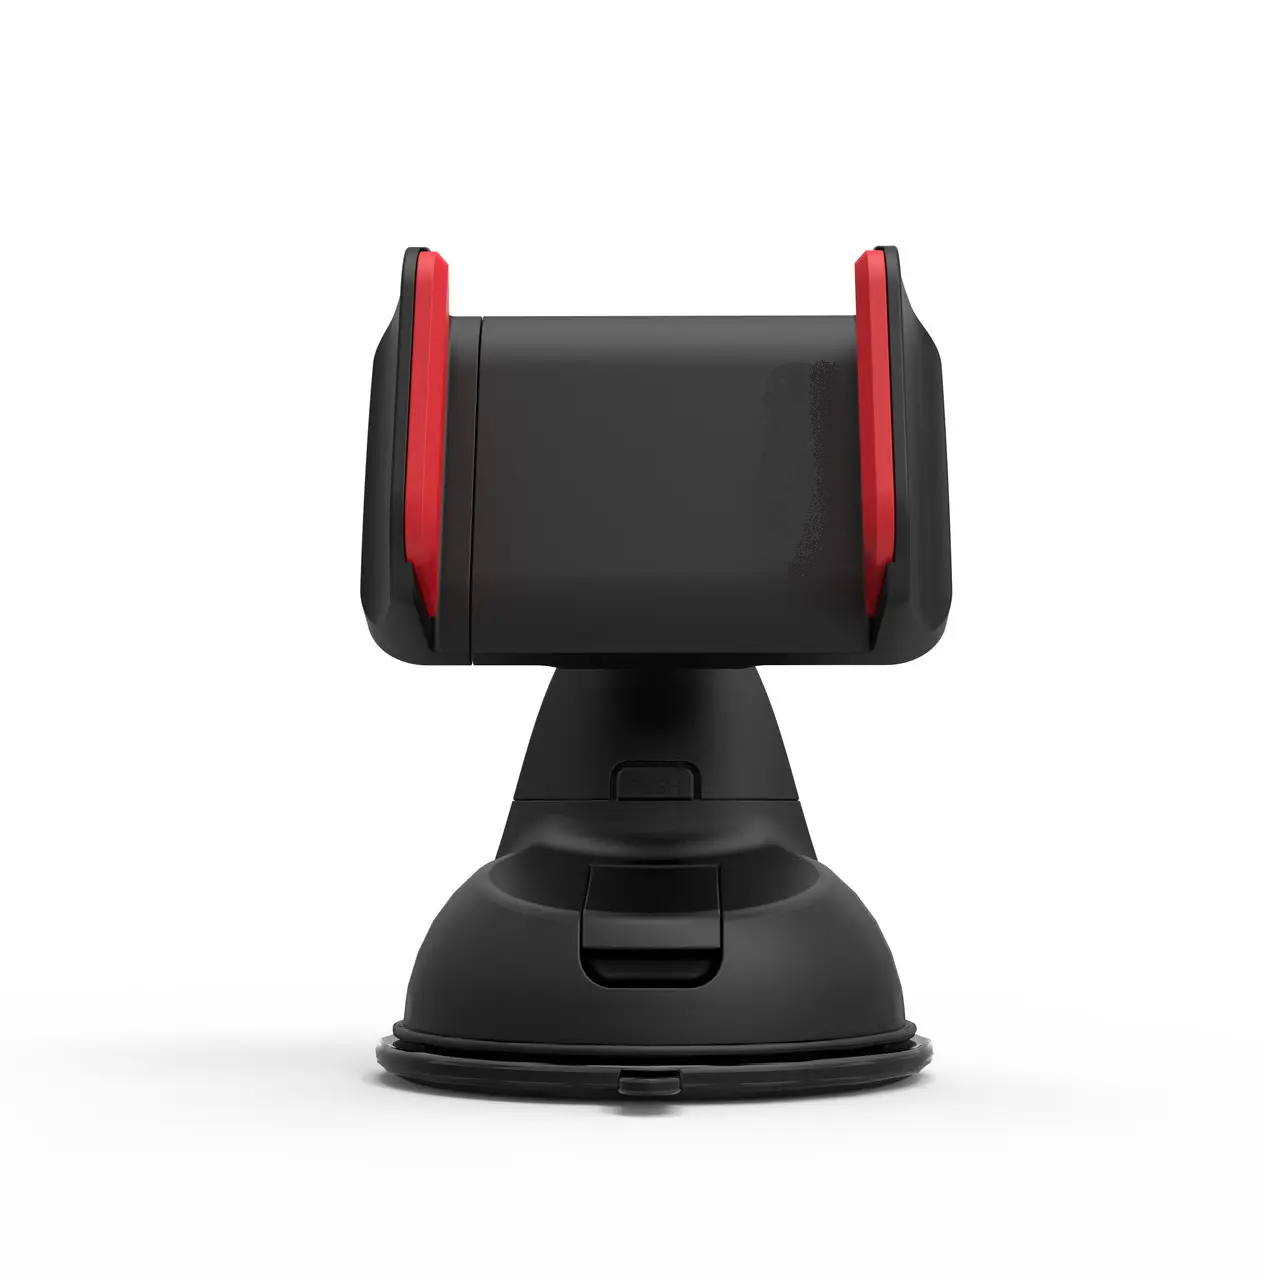 Автомобільний тримач для смартфона Promate Mount-2 Black/Red